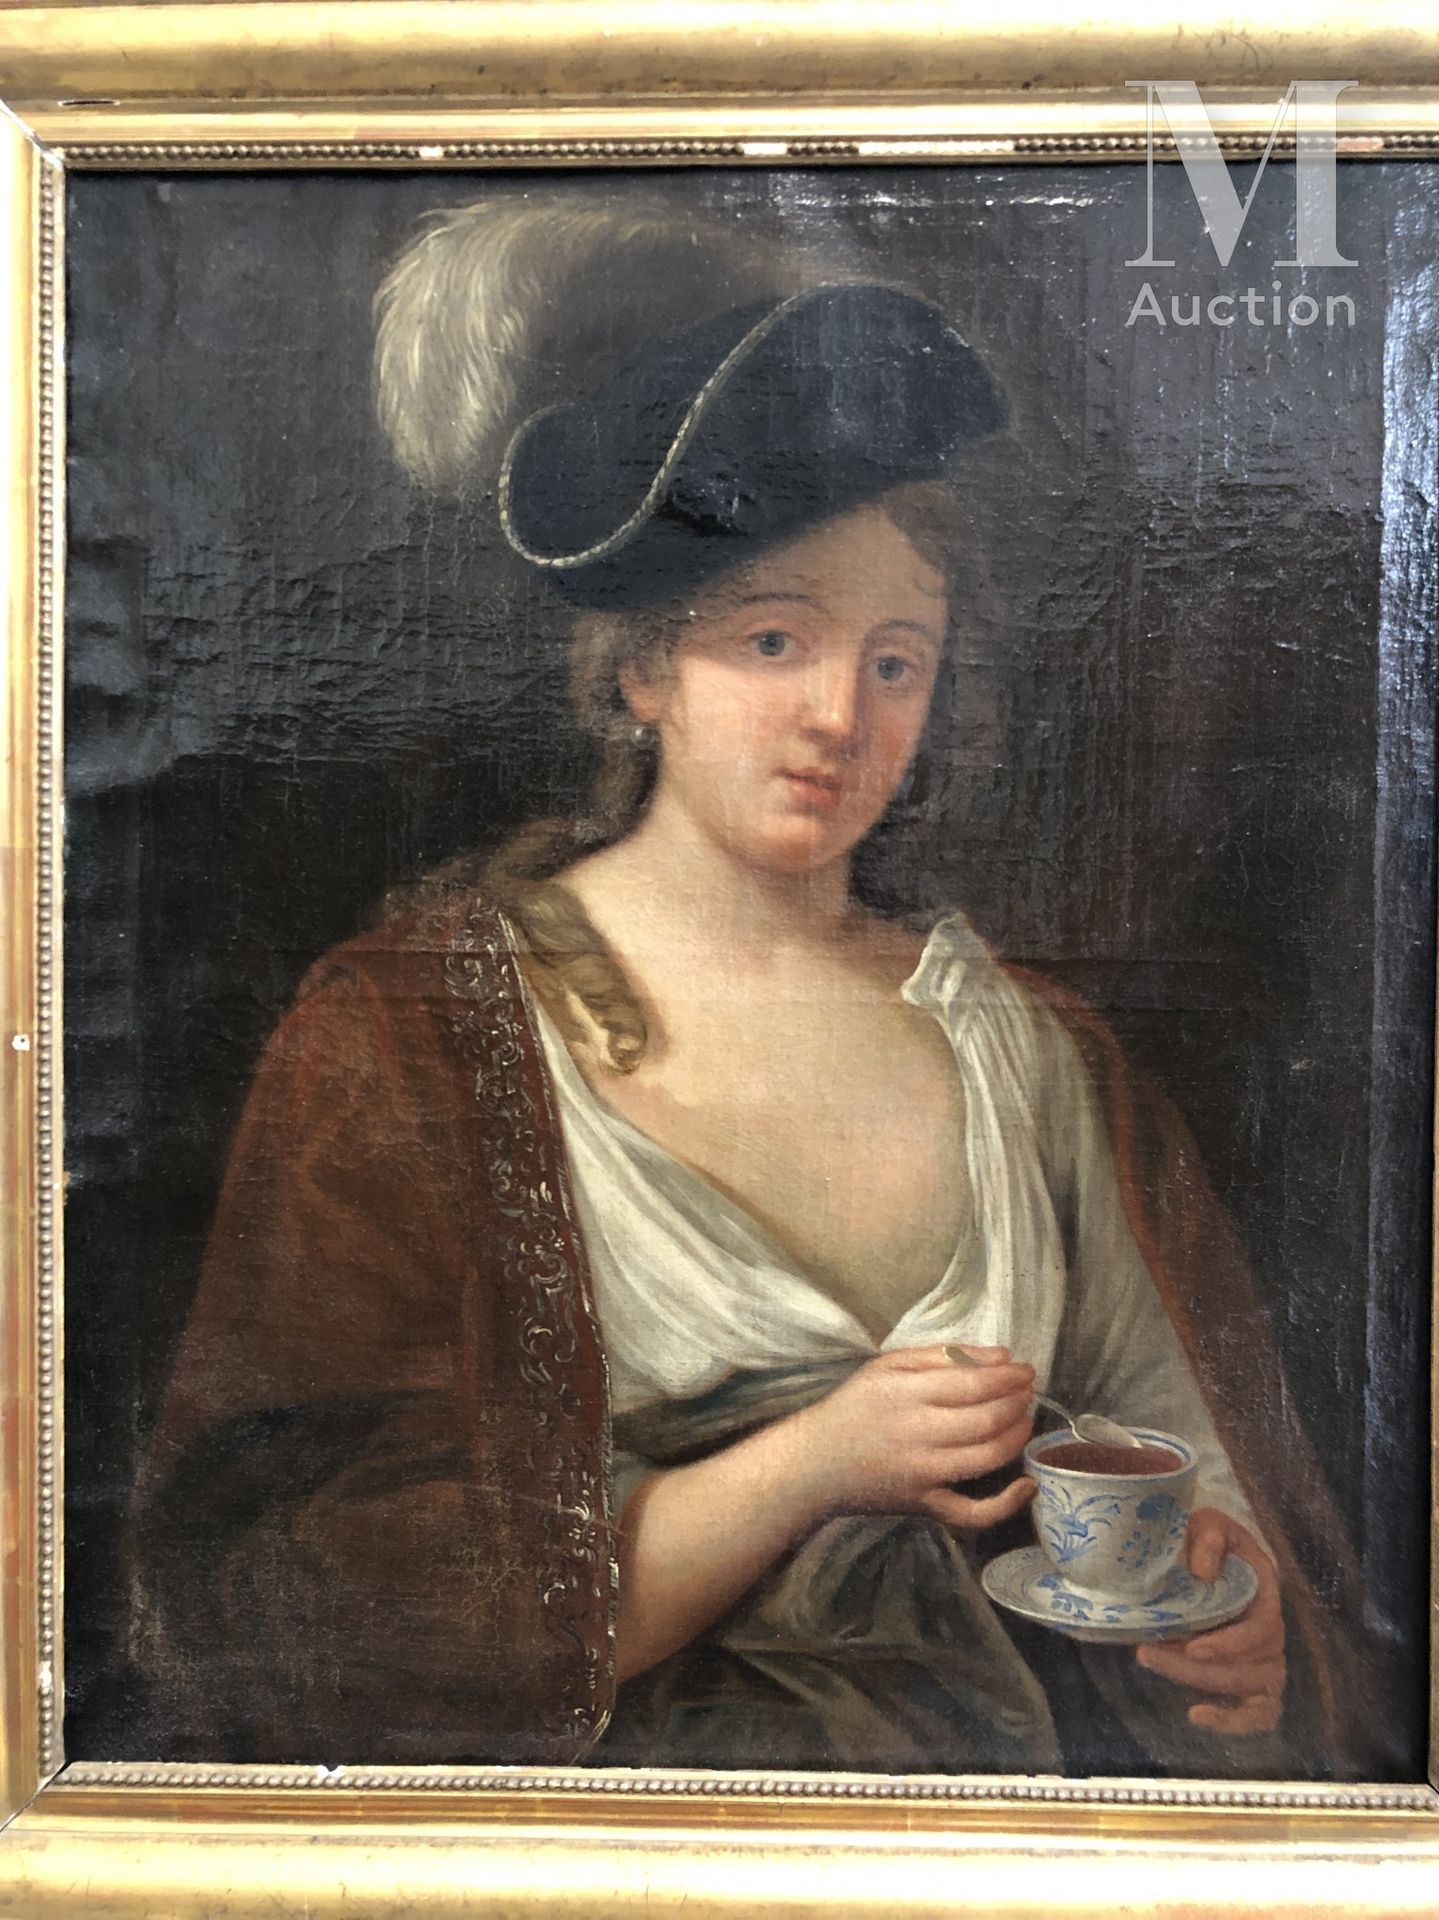 Jacques-François COURTIN (1672-1752) 喝茶的贵族画像

布面油画

73 x 60厘米。

事故